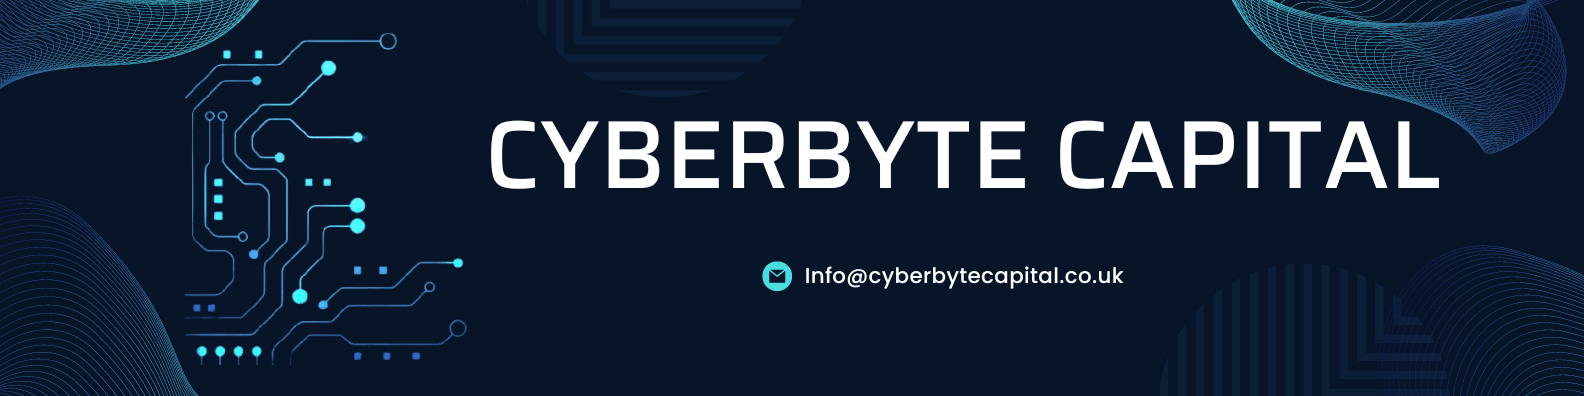 CyberByte-Capital 横幅